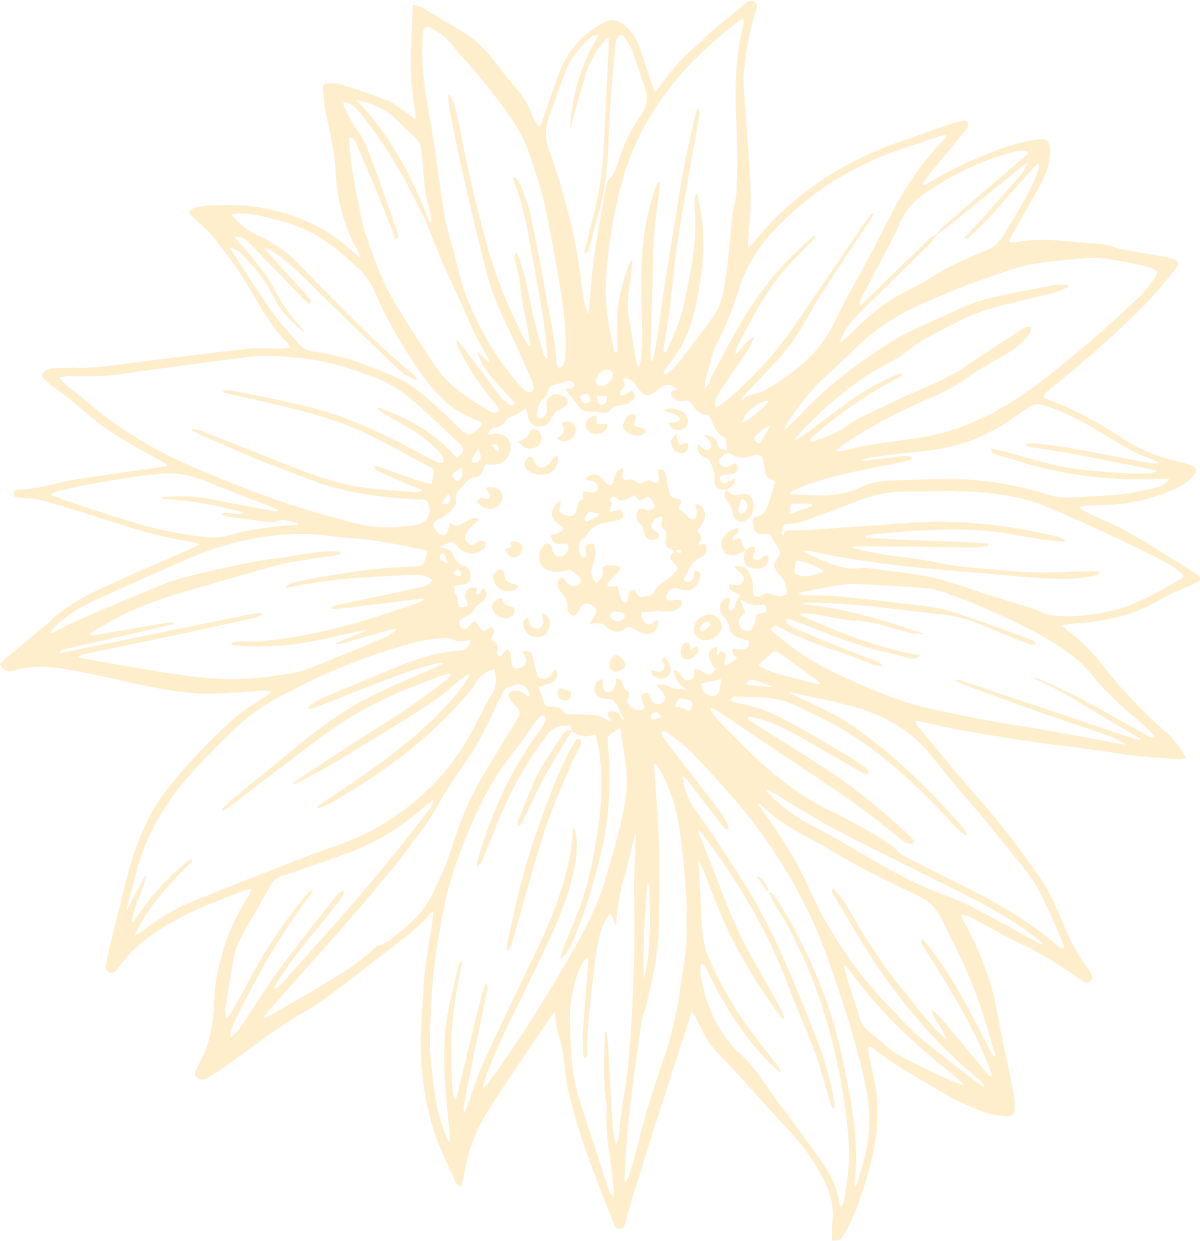 Sunflower background graphic